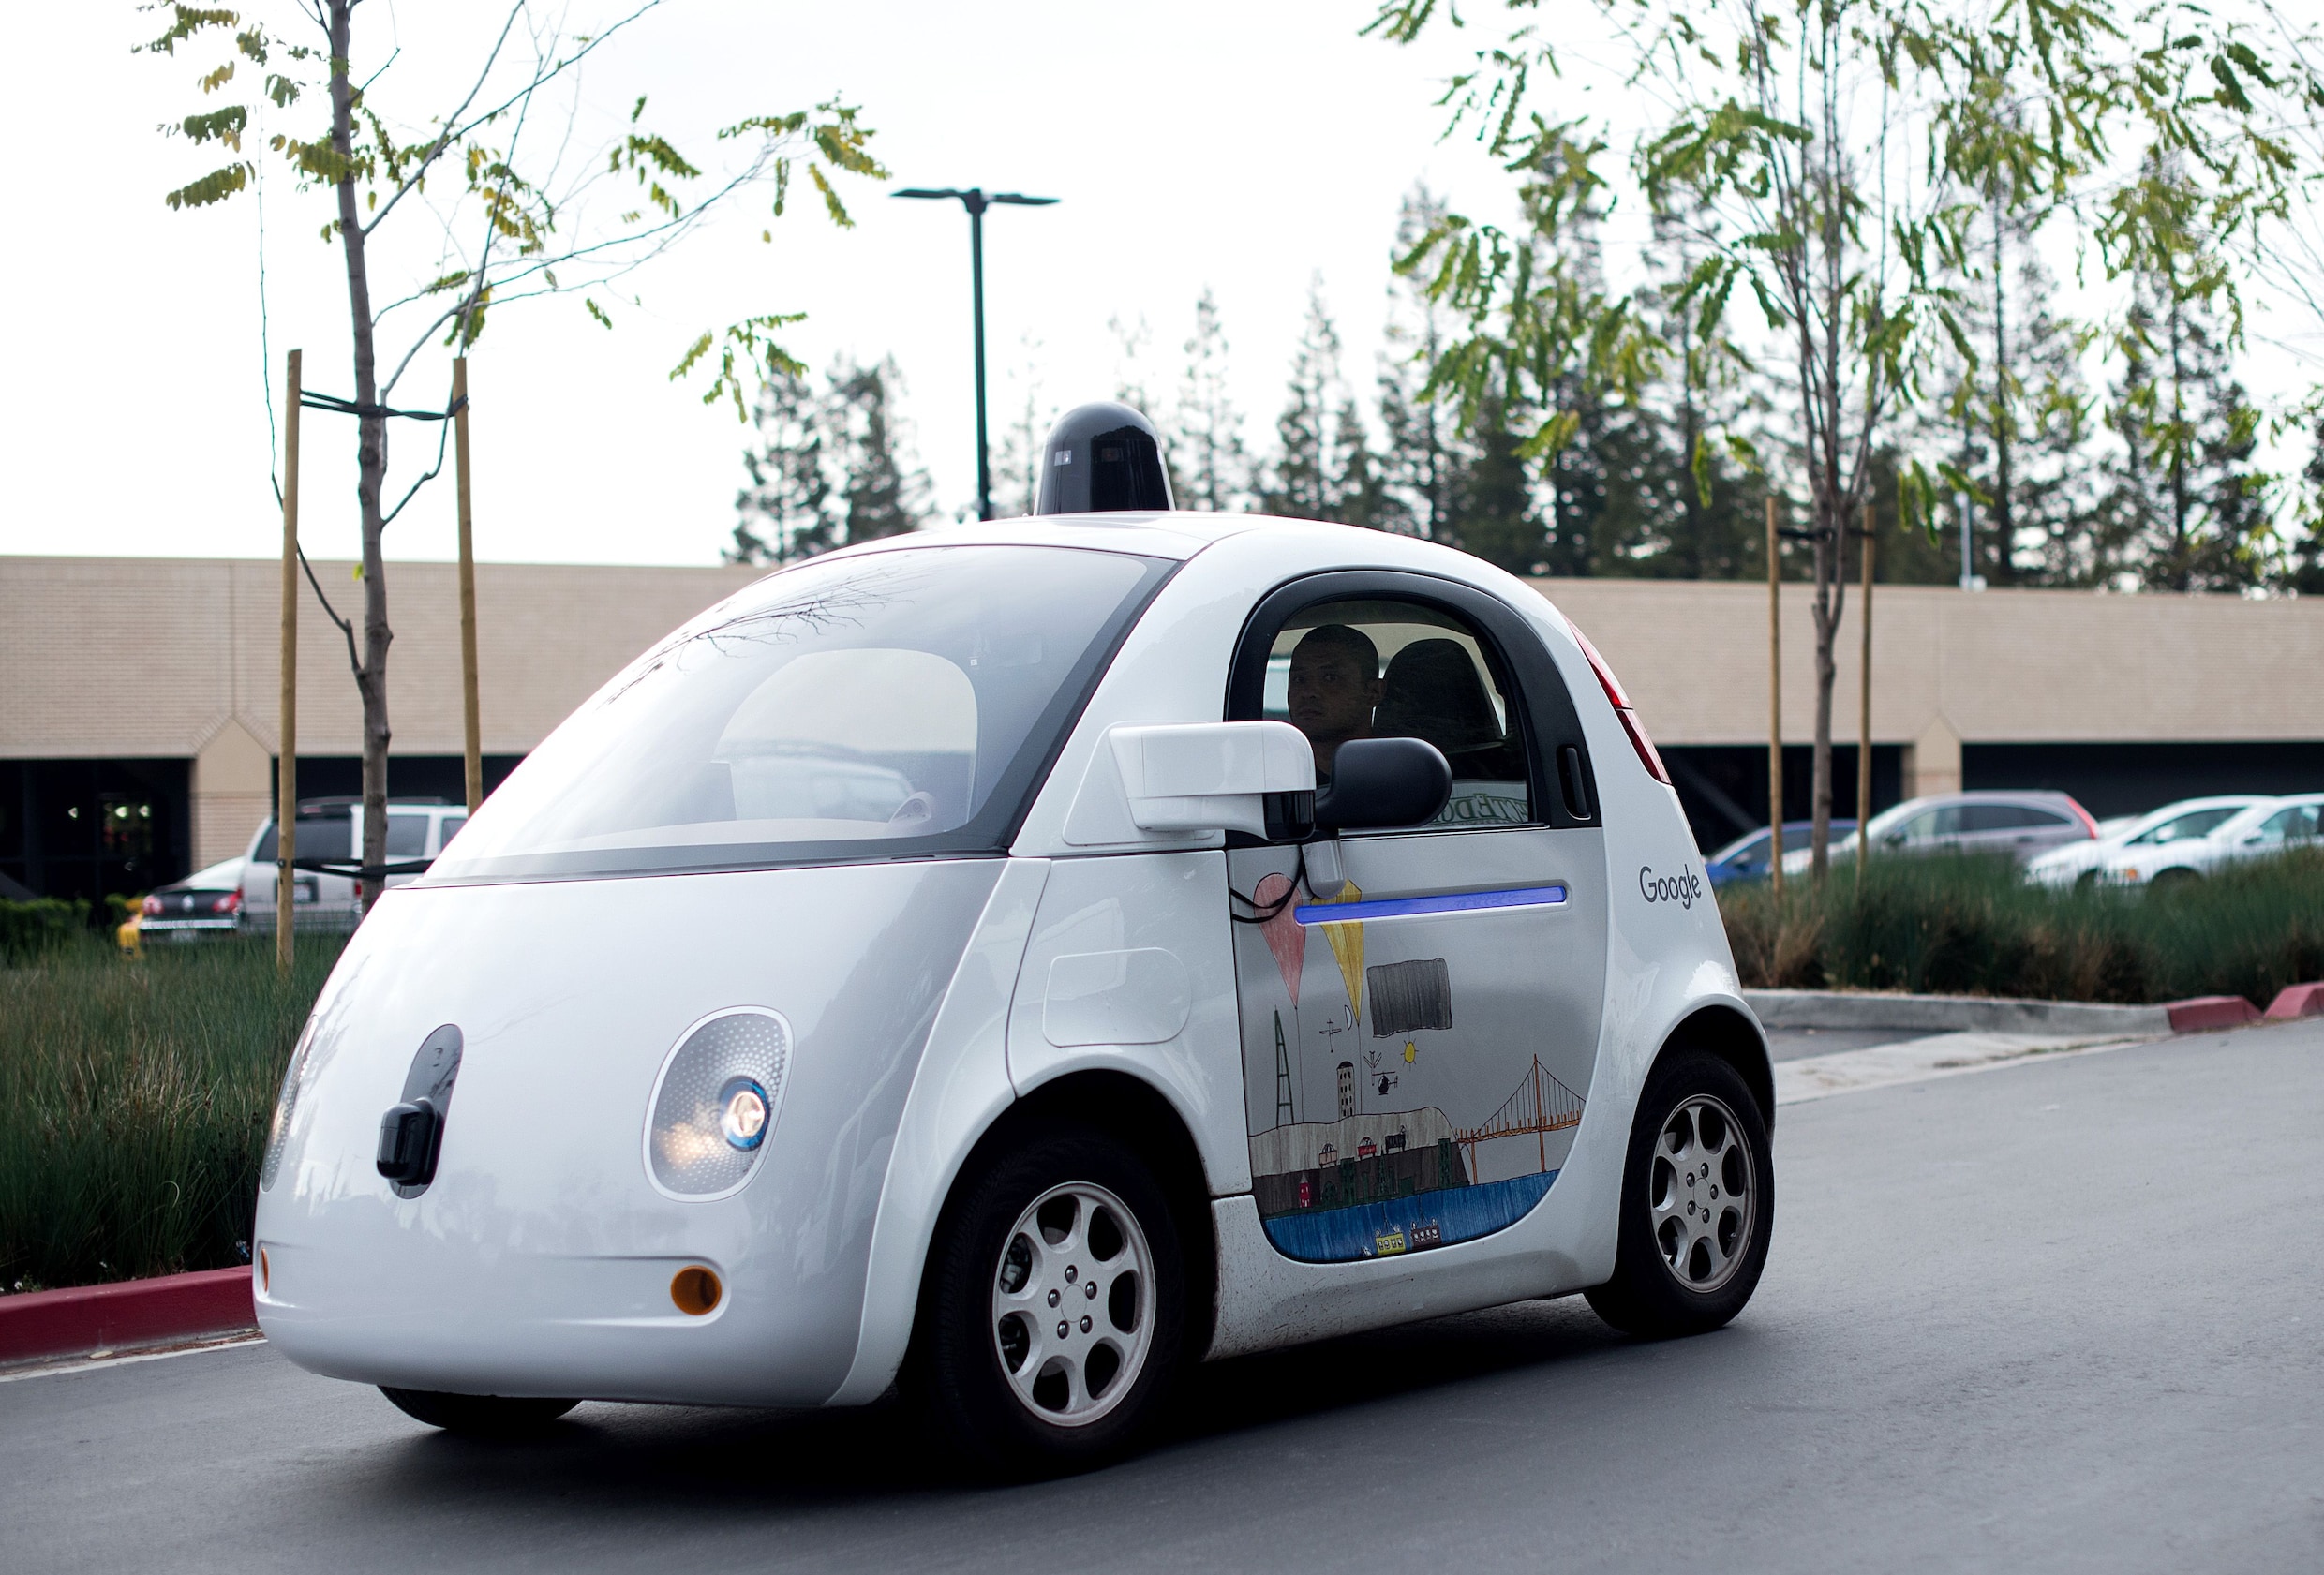 Google bouwt complete teststad voor zijn zelfrijdende auto's